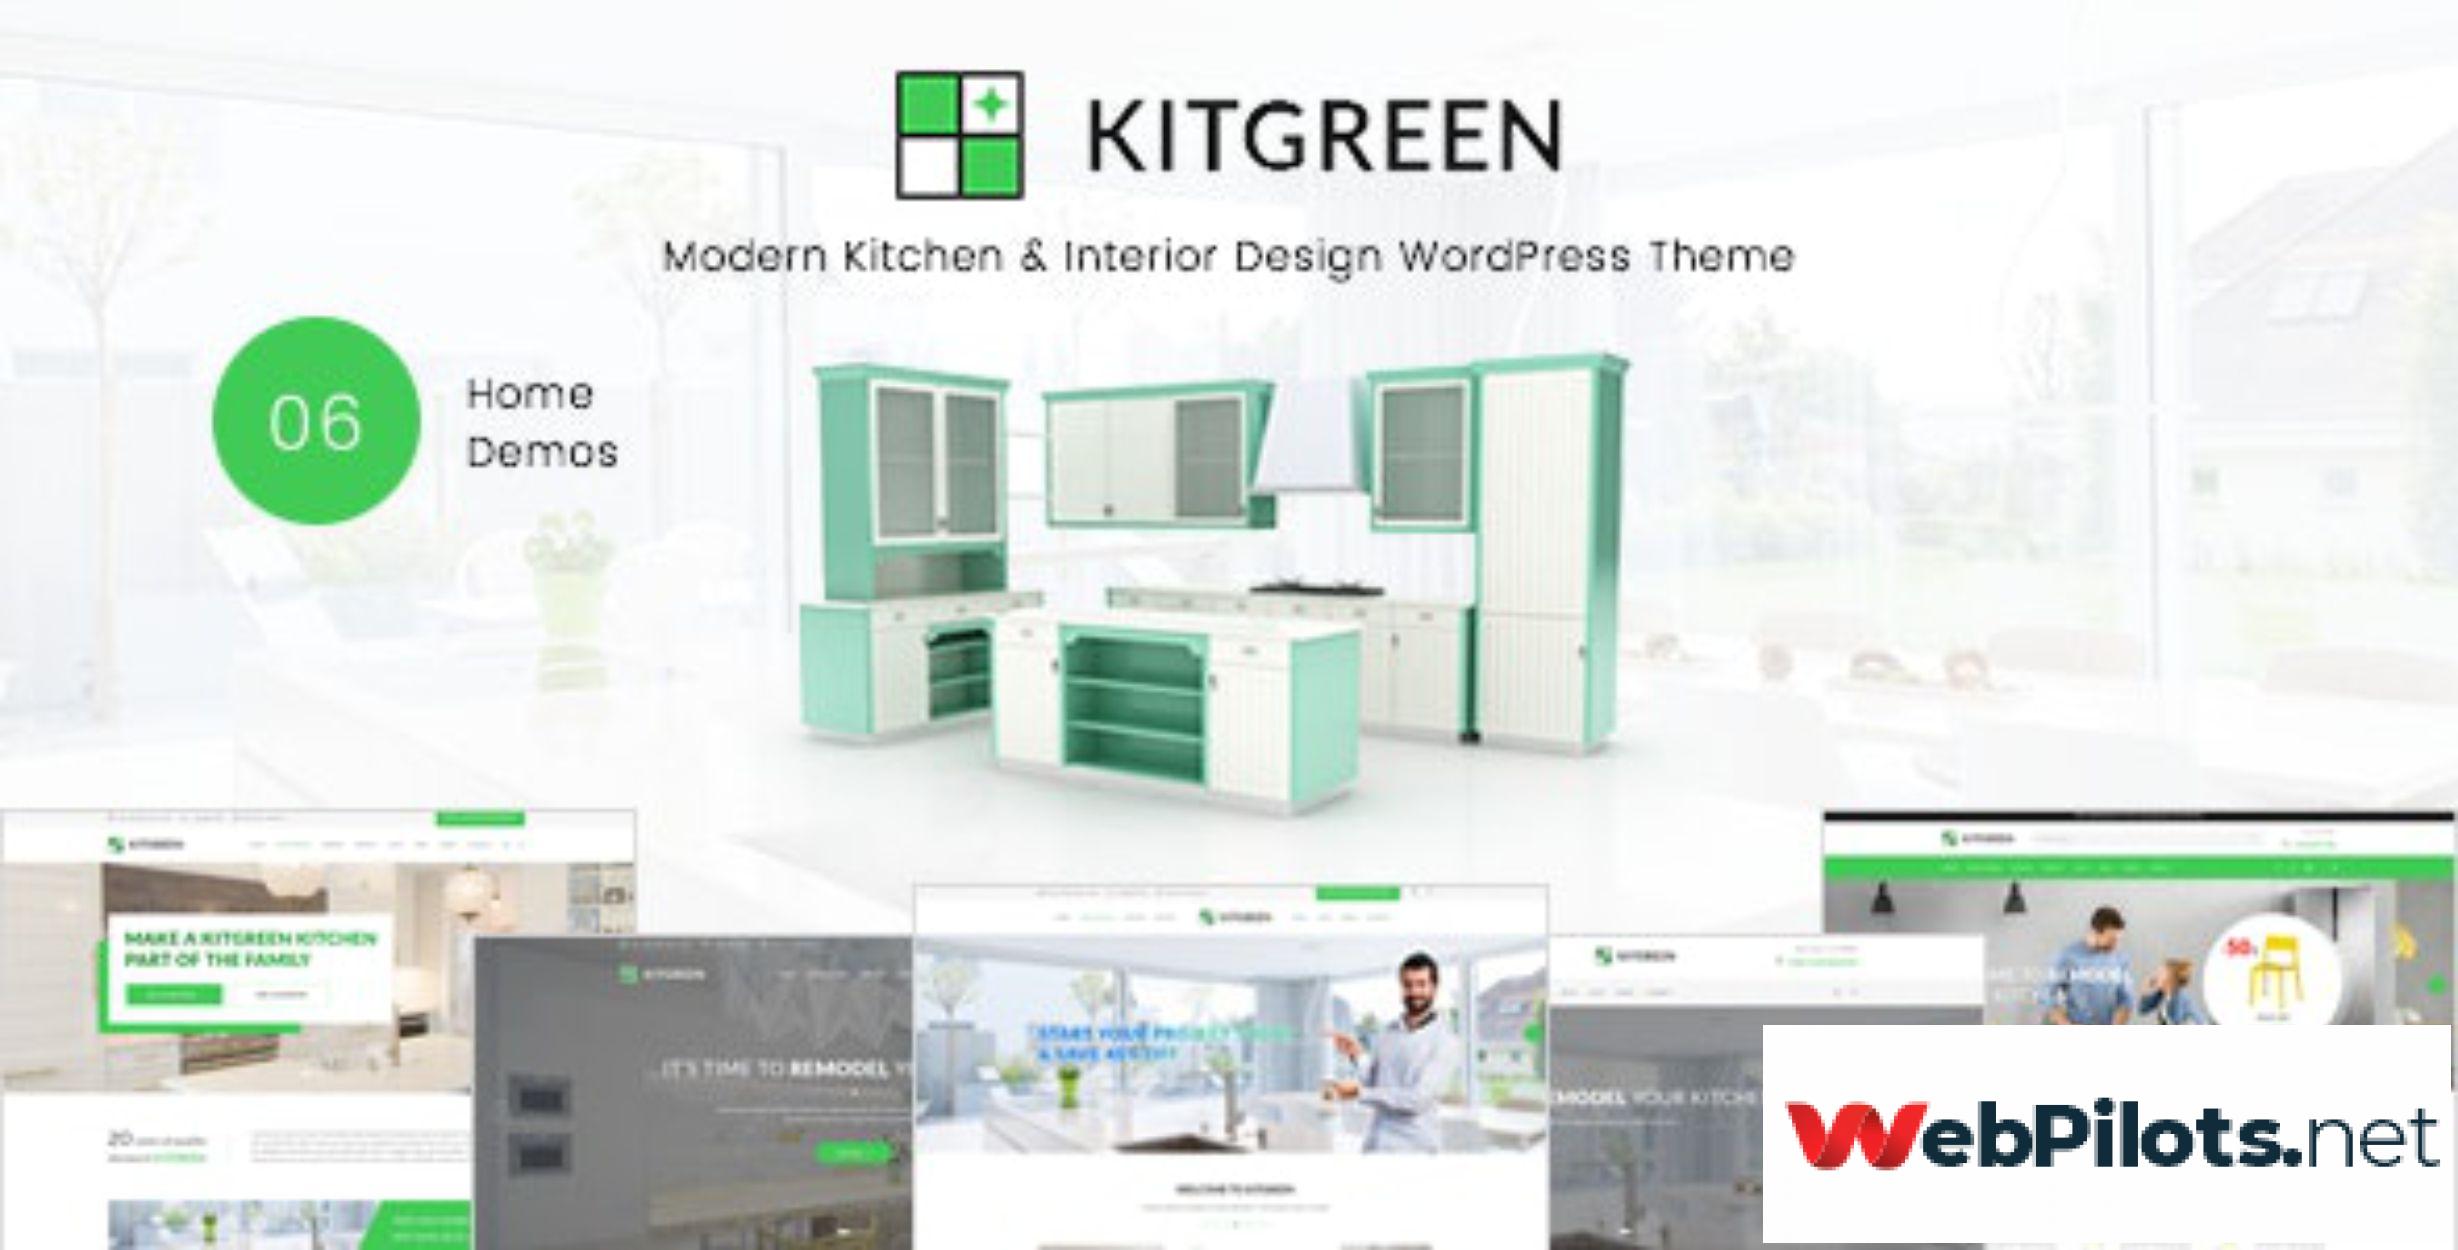 KitGreen Modern Kitchen Interior Design